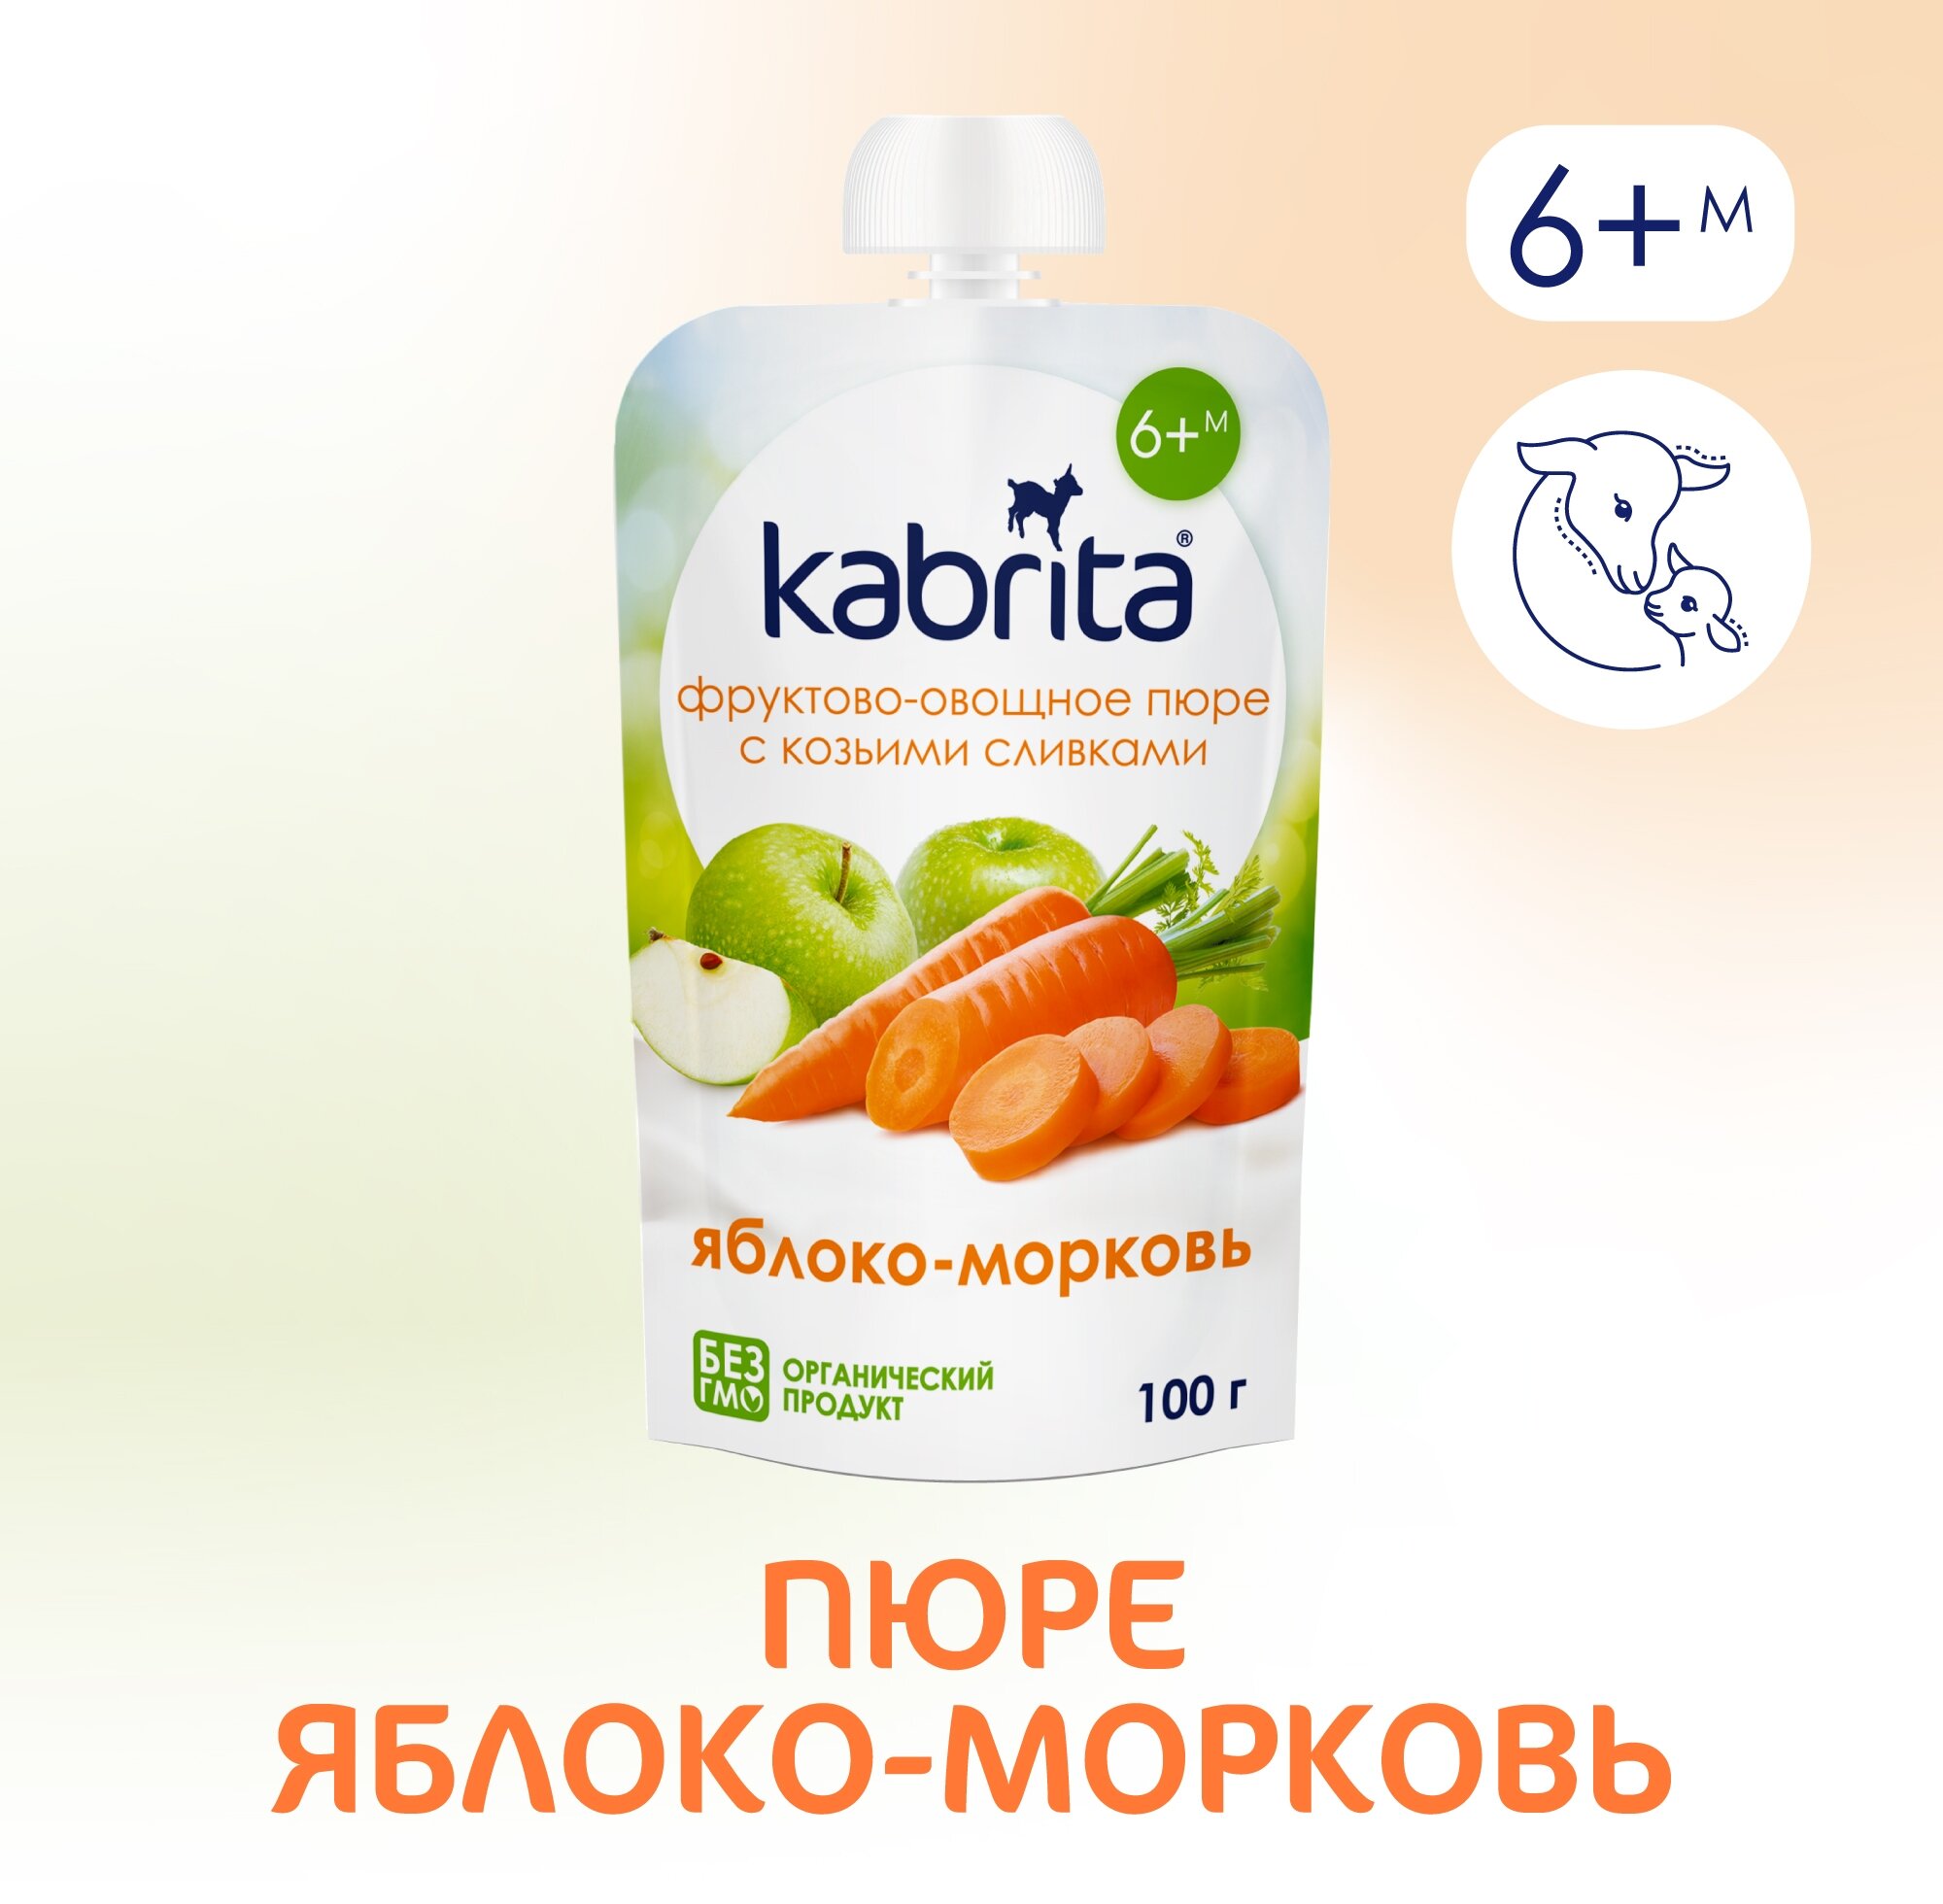 Органическое пюре Kabrita "Яблоко-морковь" с козьими сливками, 100гр - фото №2